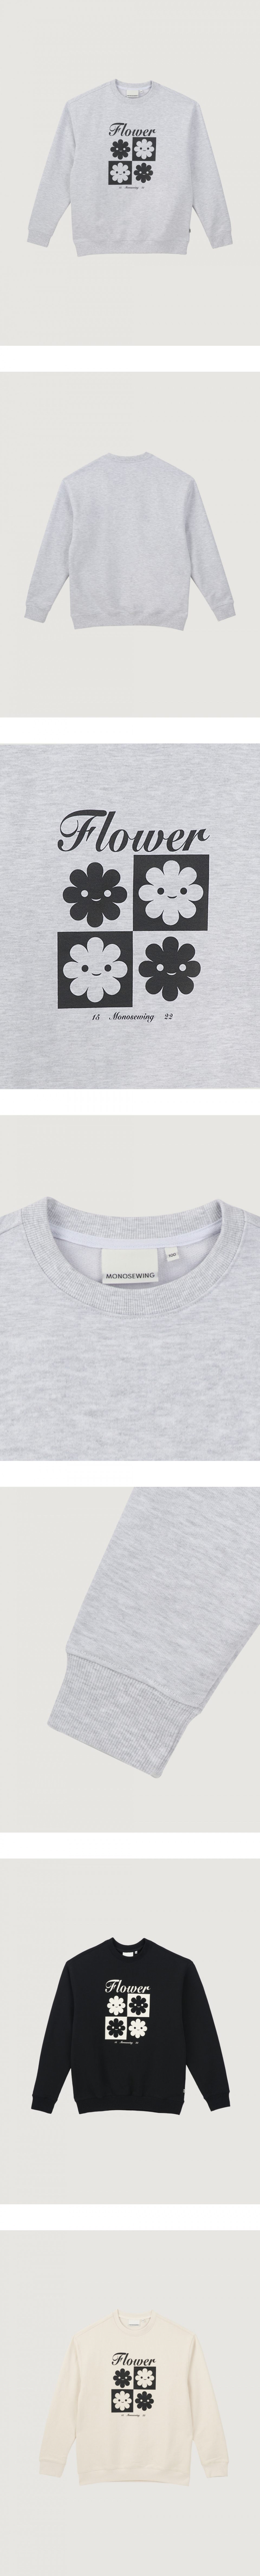 모노소잉(MONOSEWING) 체커보드 스웨트 셔츠 (멜란지 그레이)